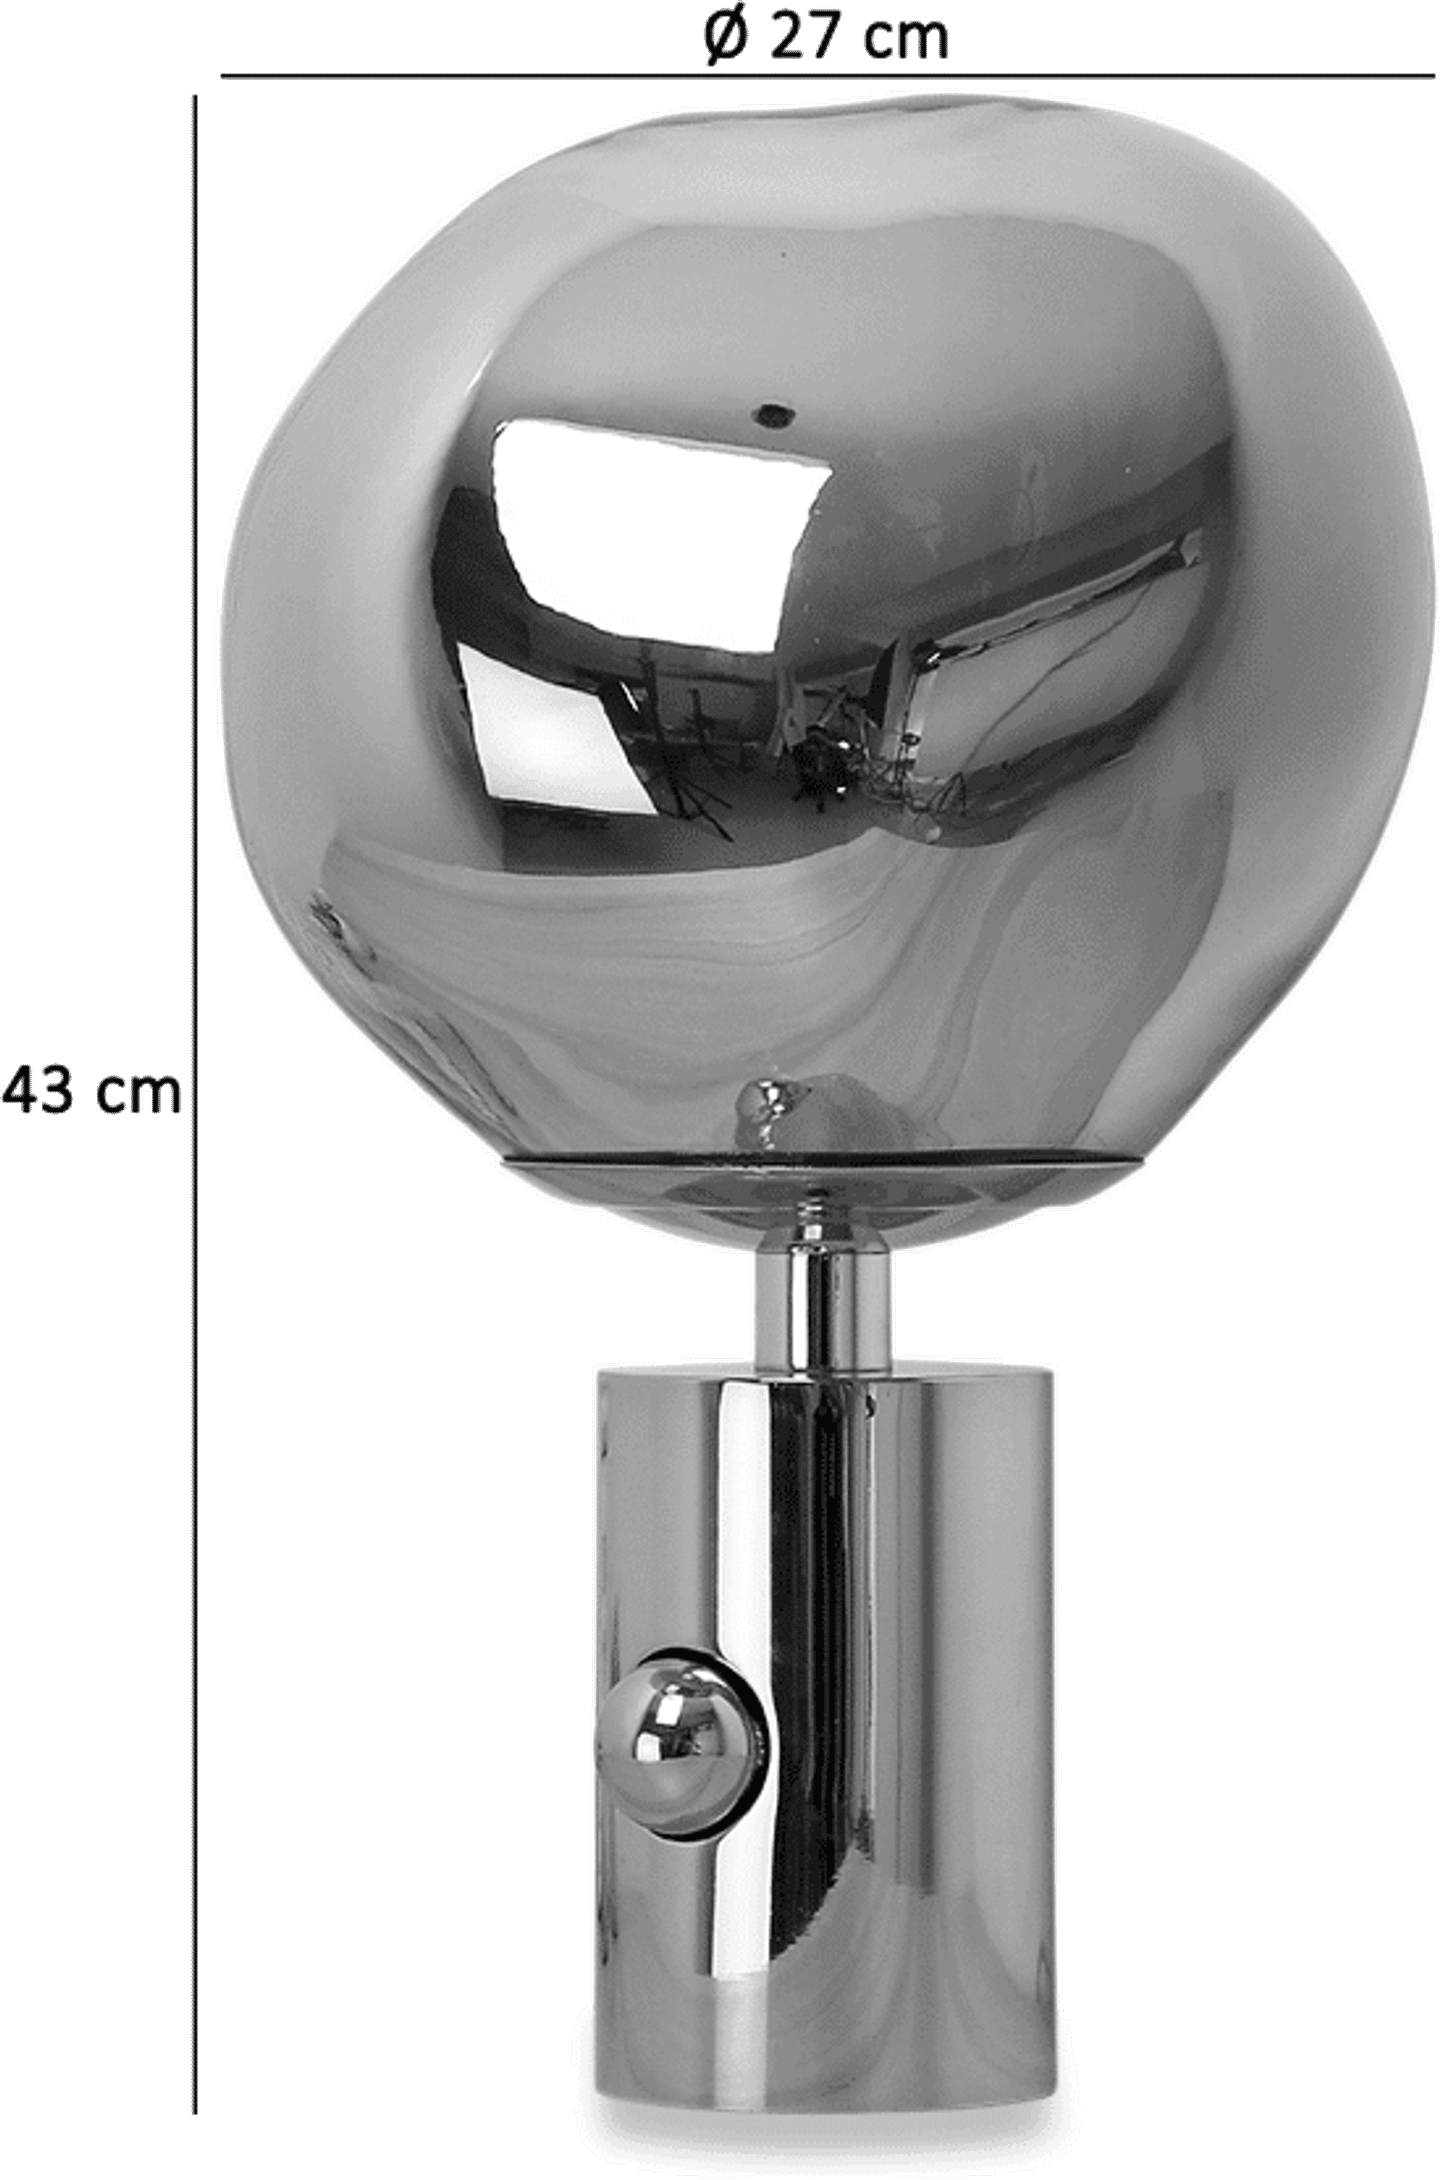 Lámpara de mesa Melt Style Chrome image.